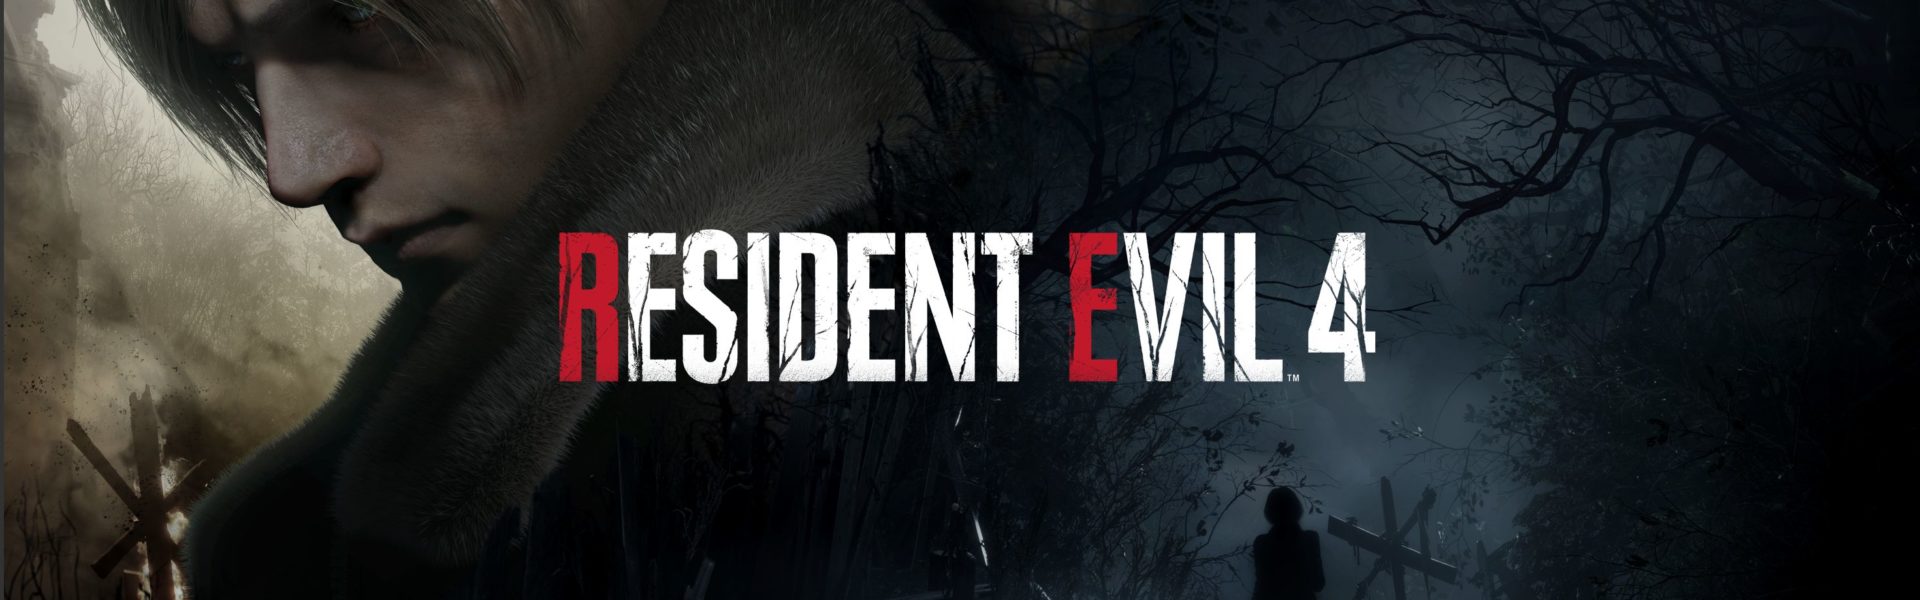 Resident Evil 4 ist jetzt erhältlich!